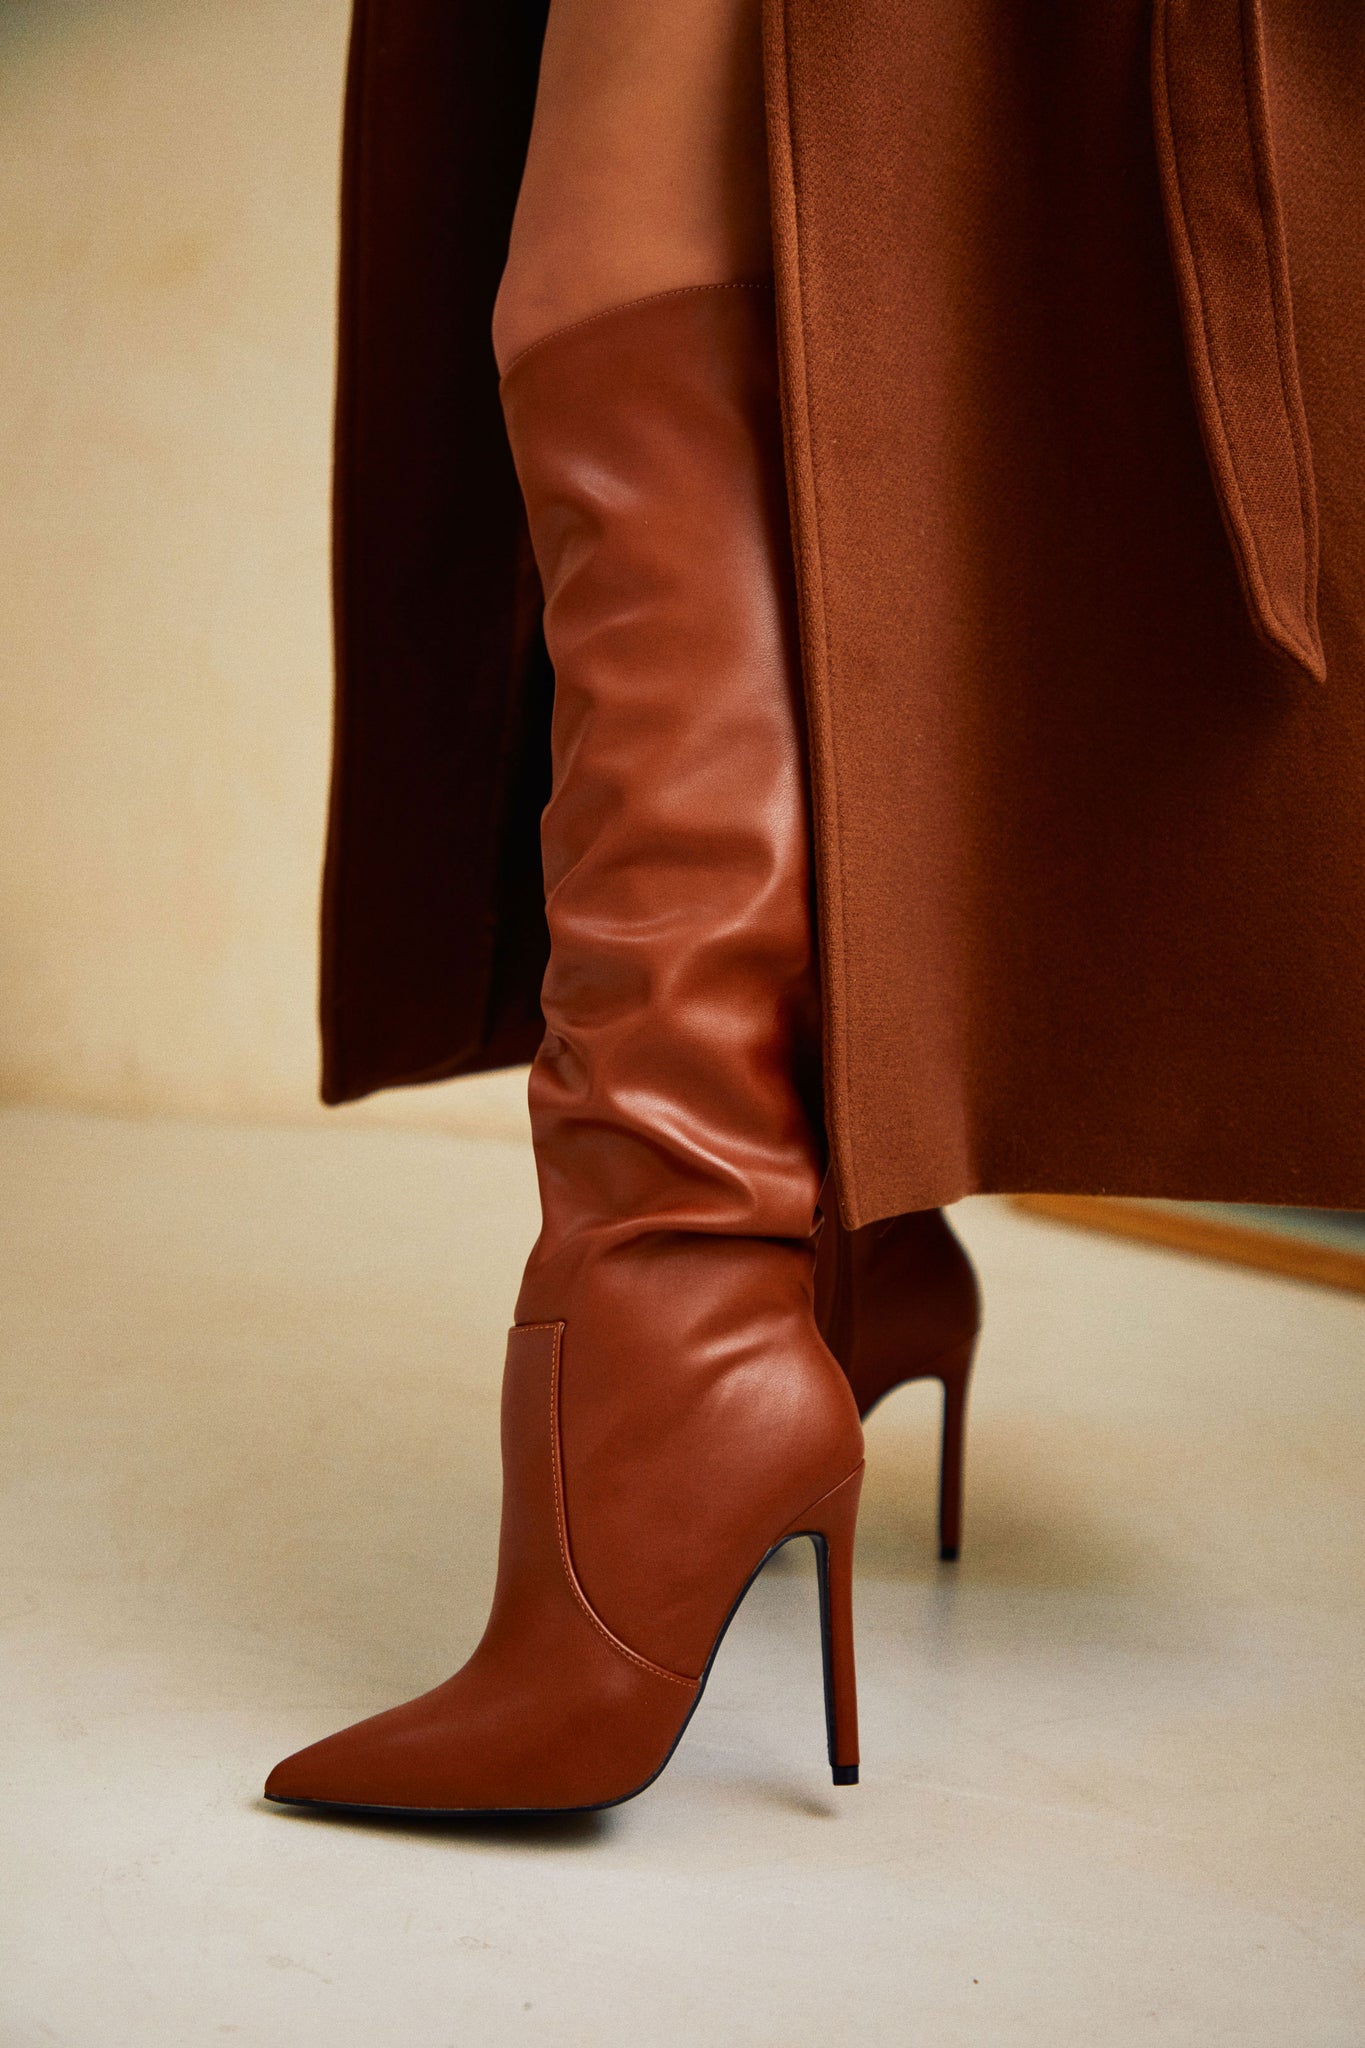 Vintage Tan Brown Ankle Boots Leather Women Strappy Kitten Heel Footwear  Size 39 EU Made in Brazil - Etsy